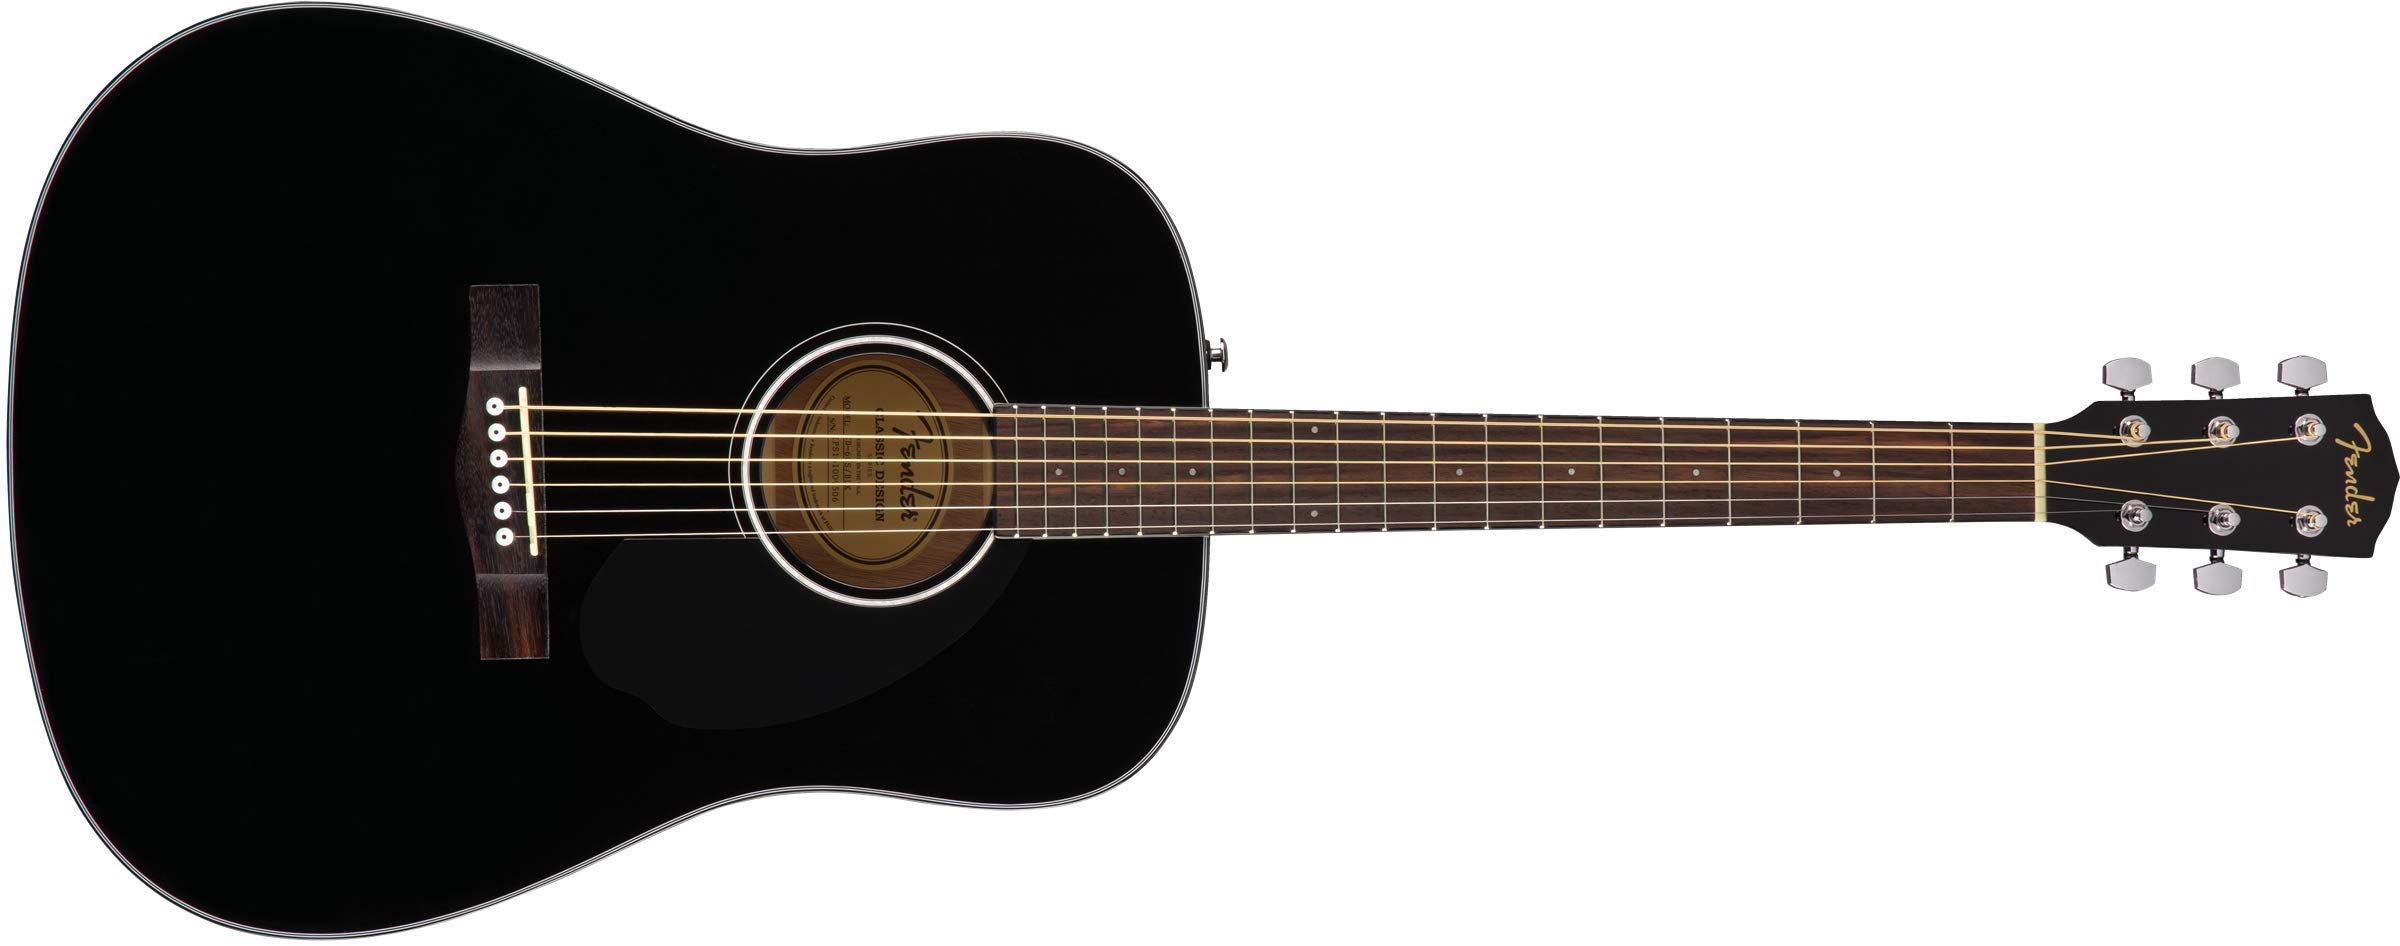 Fender CD-60S ドレッドノート アコースティックギター、ウォルナット指板、ブラック...